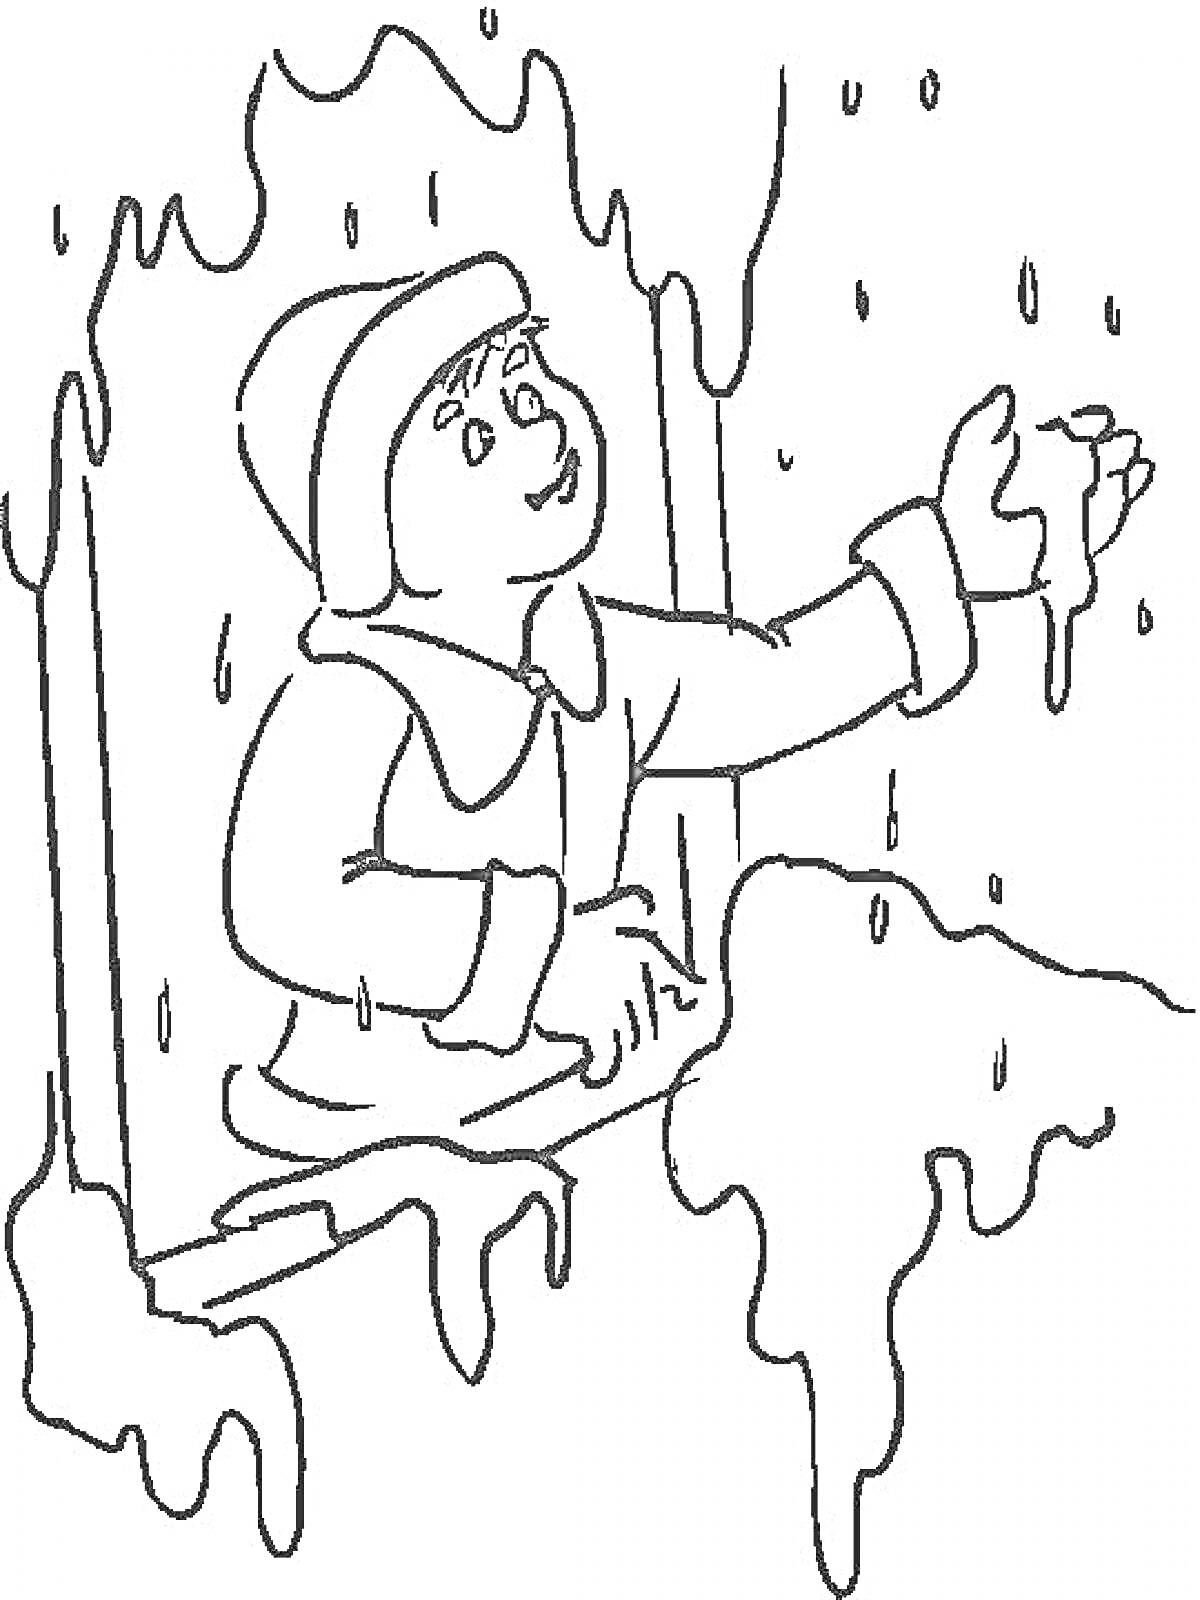 Раскраска Ребенок в зимней одежде тянет руку к падающему снегу из окна